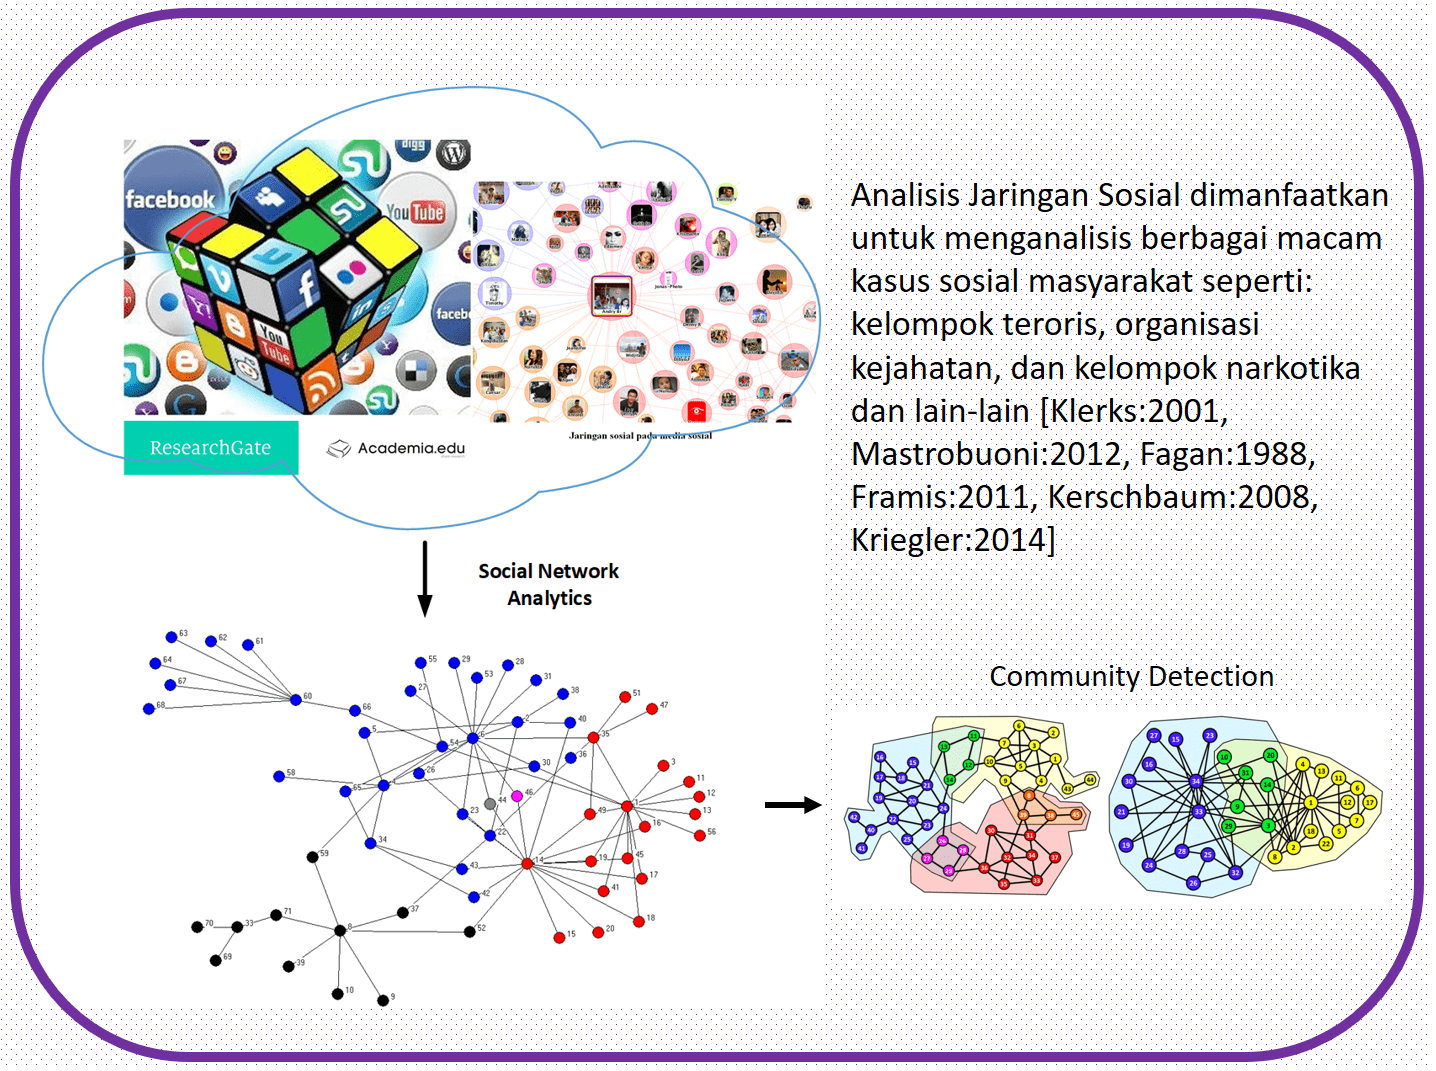 Perkembangan dan Tantangan Analisis Jaringan Sosial